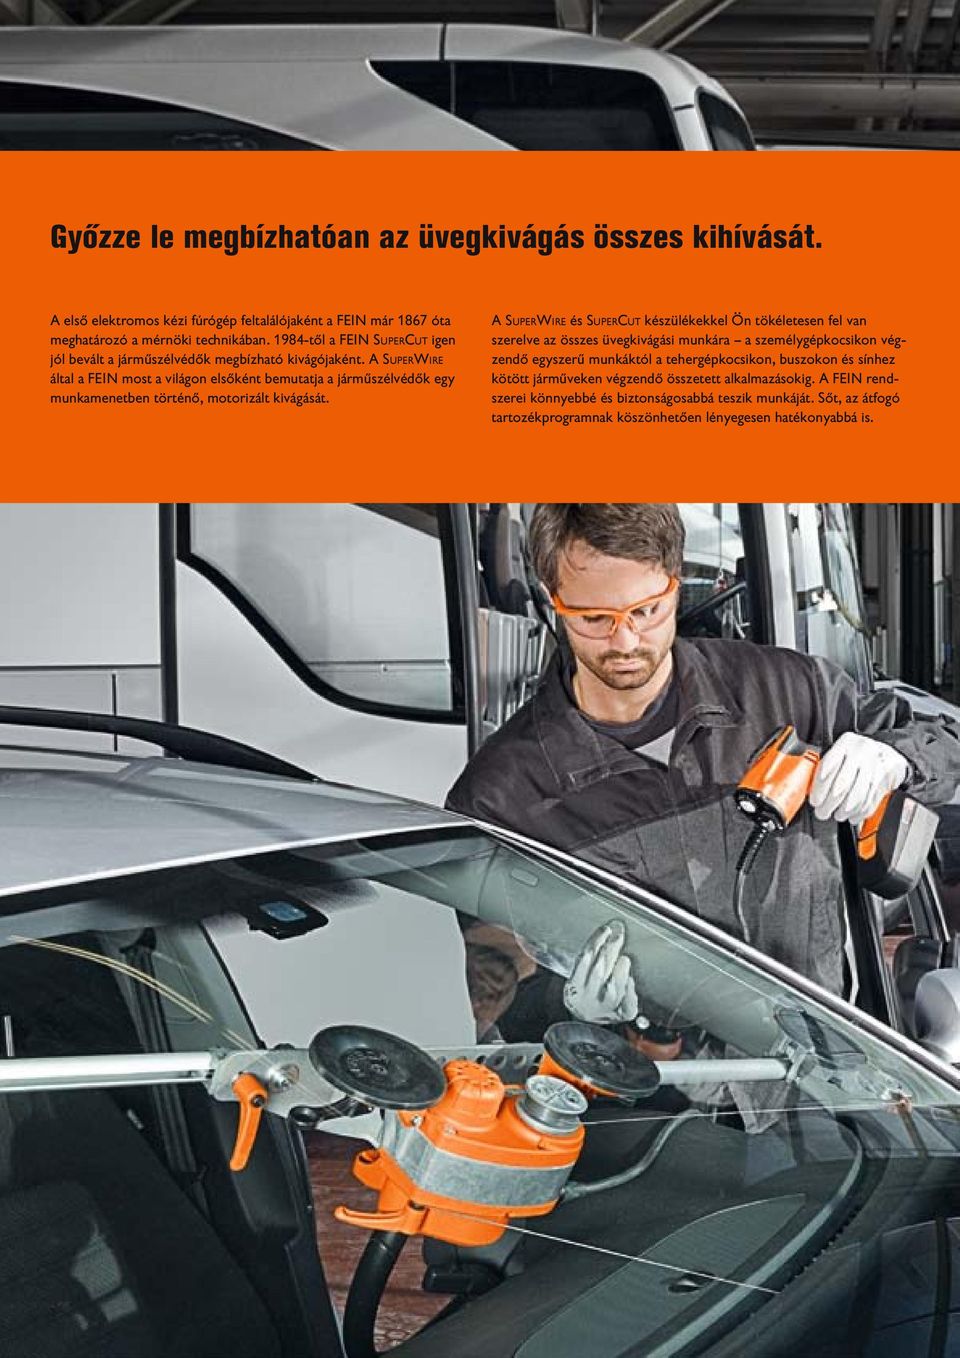 A SuperWire által a FEIN most a világon elsőként bemutatja a járműszélvédők egy munkamenetben történő, motorizált kivágását.